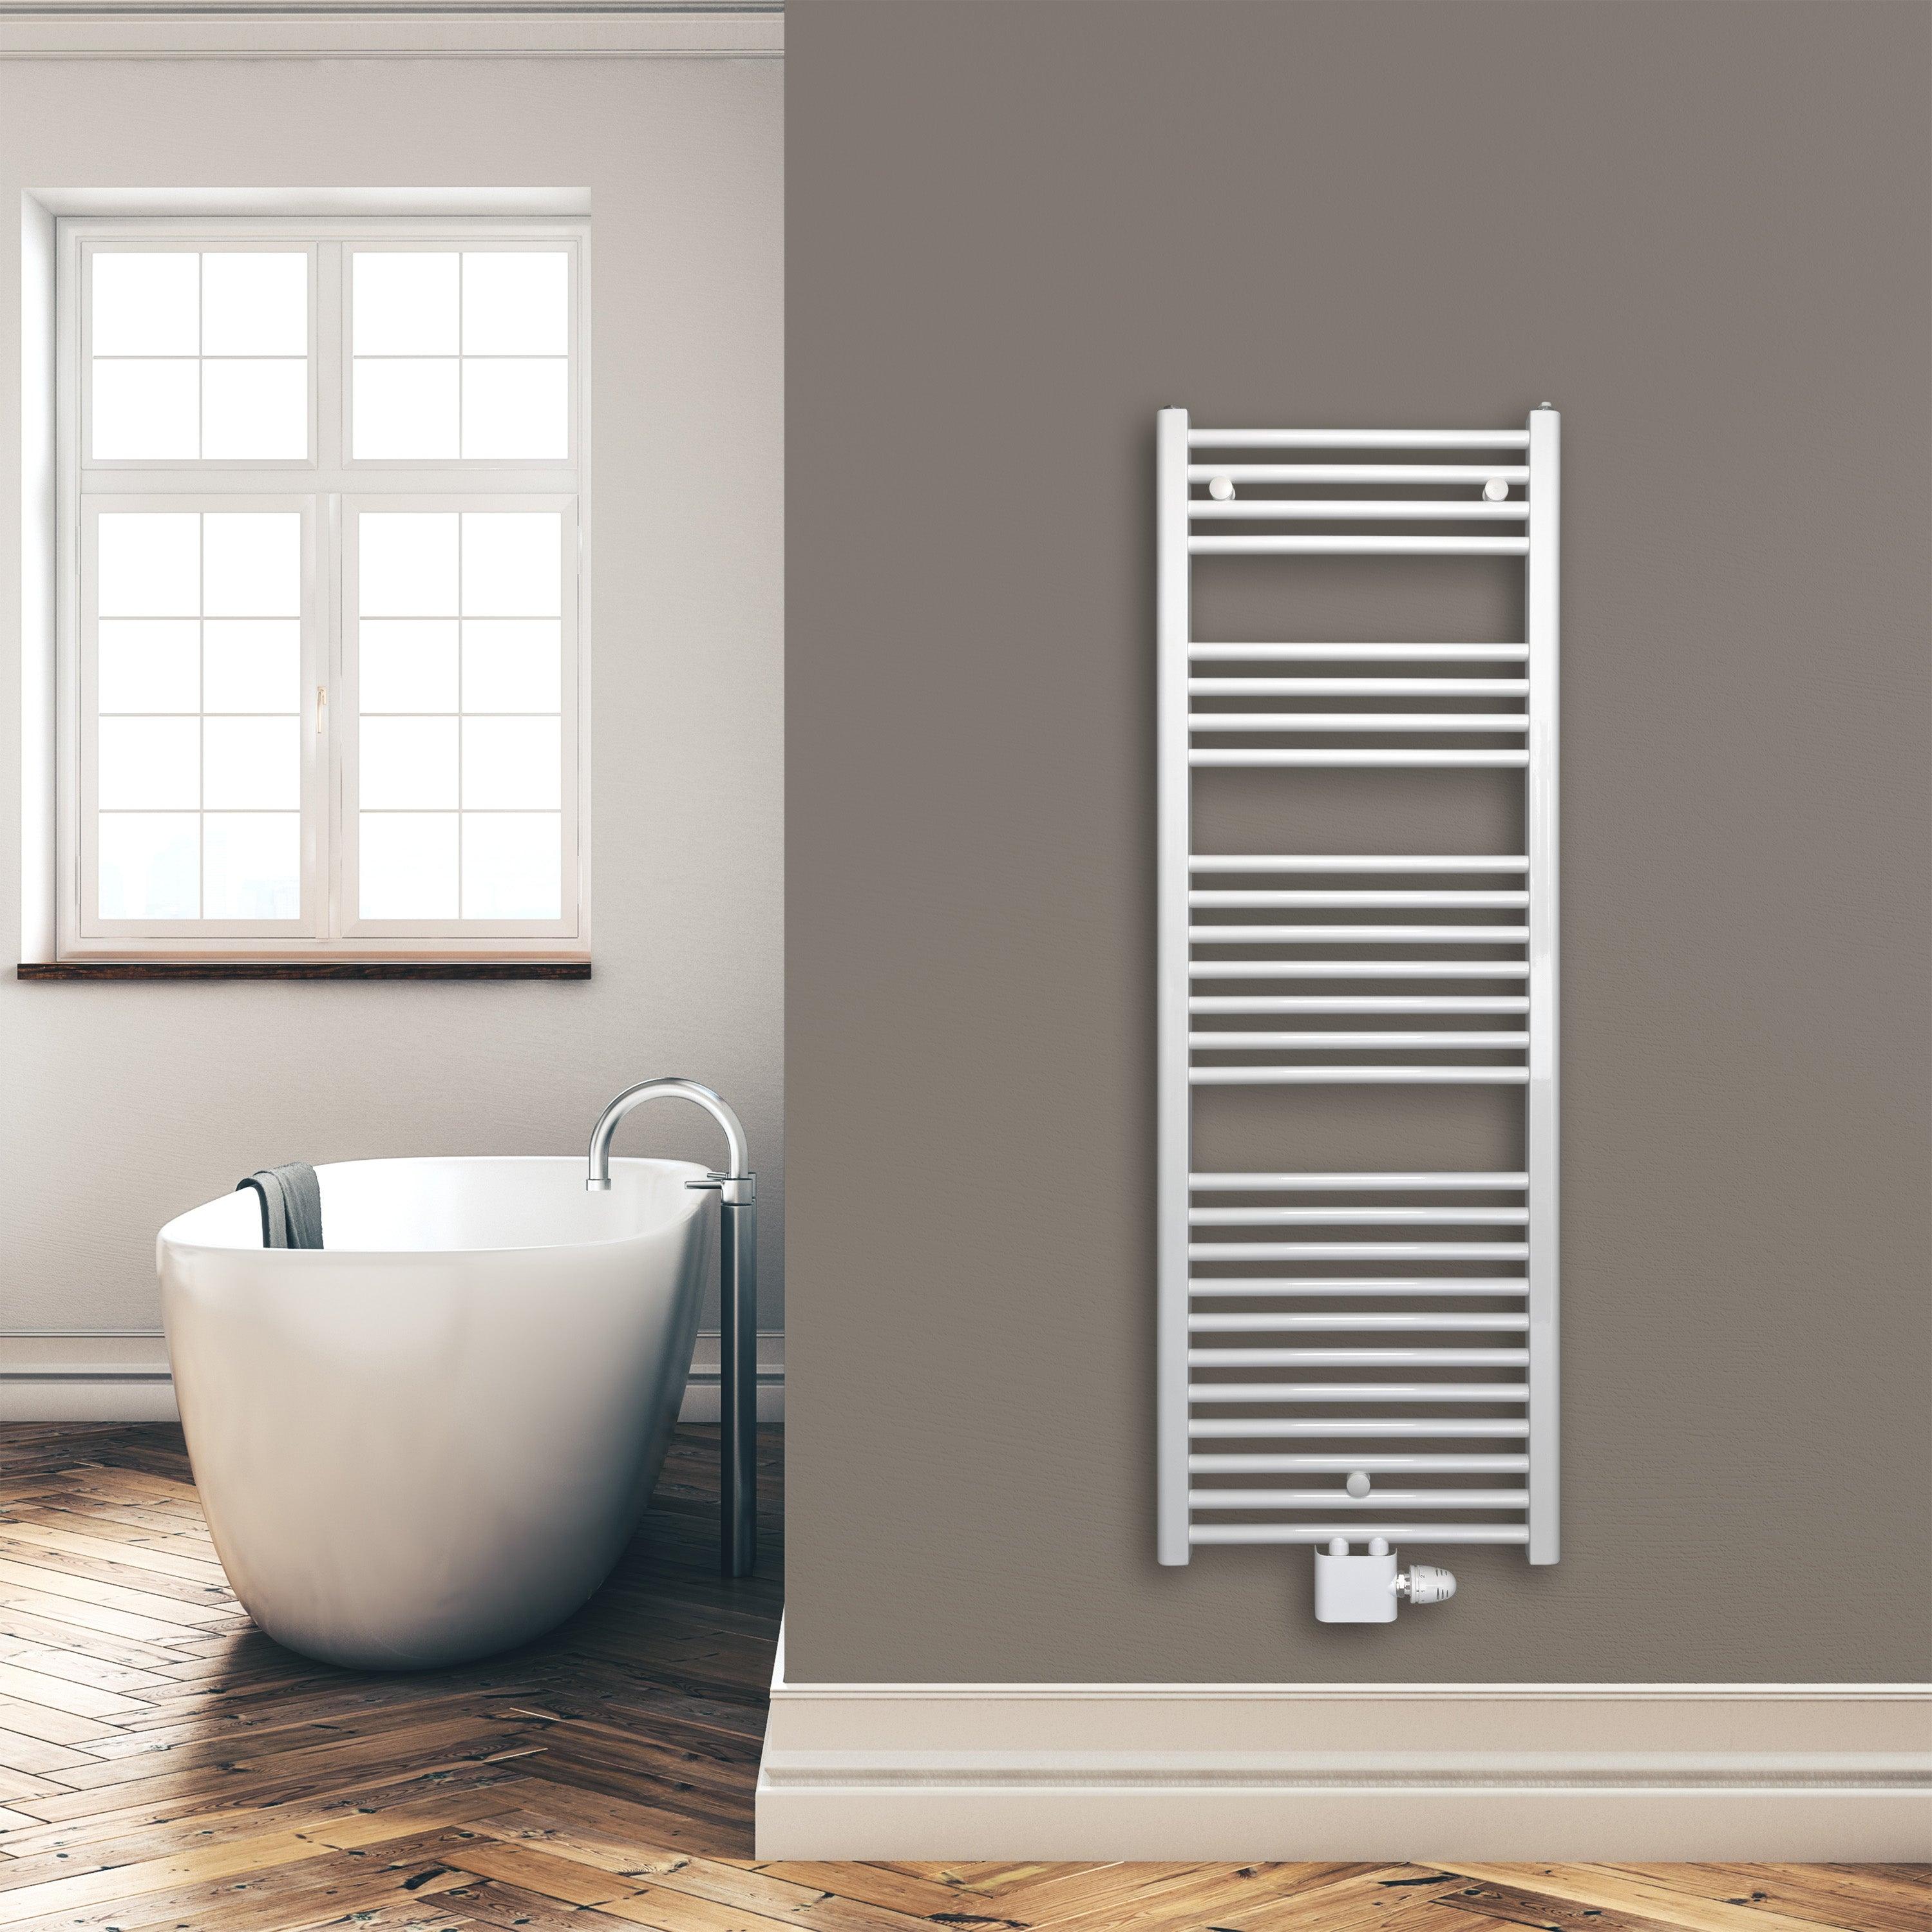 Badheizkörper 1424 x 500 mm gerade mit Mittenanschluss Handtuchhalter Badezimmer Heizung Handtuchwärmer weiß Montagebeispiel - heizkoerper.shop